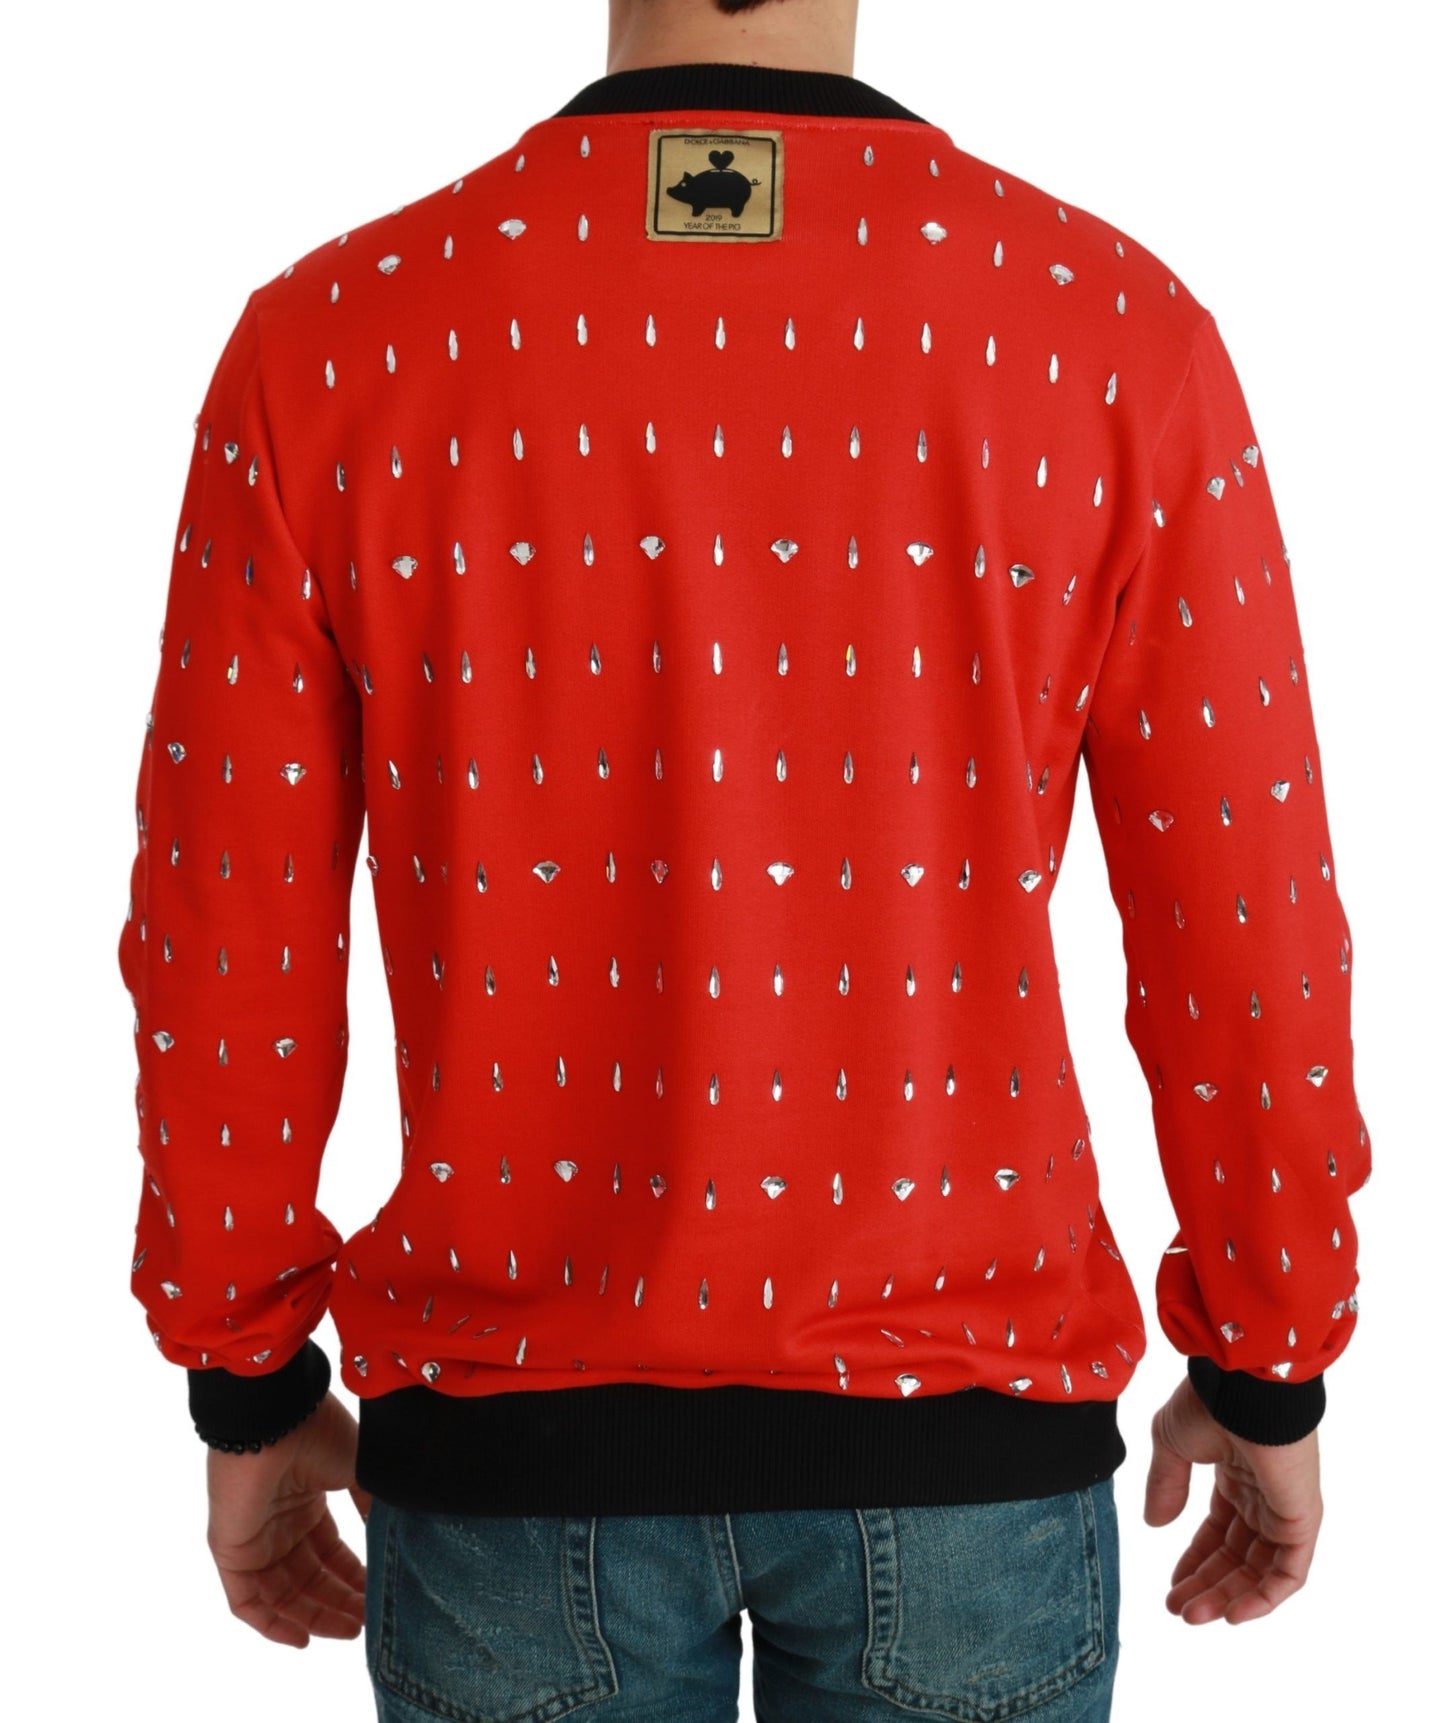 Elegant Red Crystal-Embellished Pullover Sweater